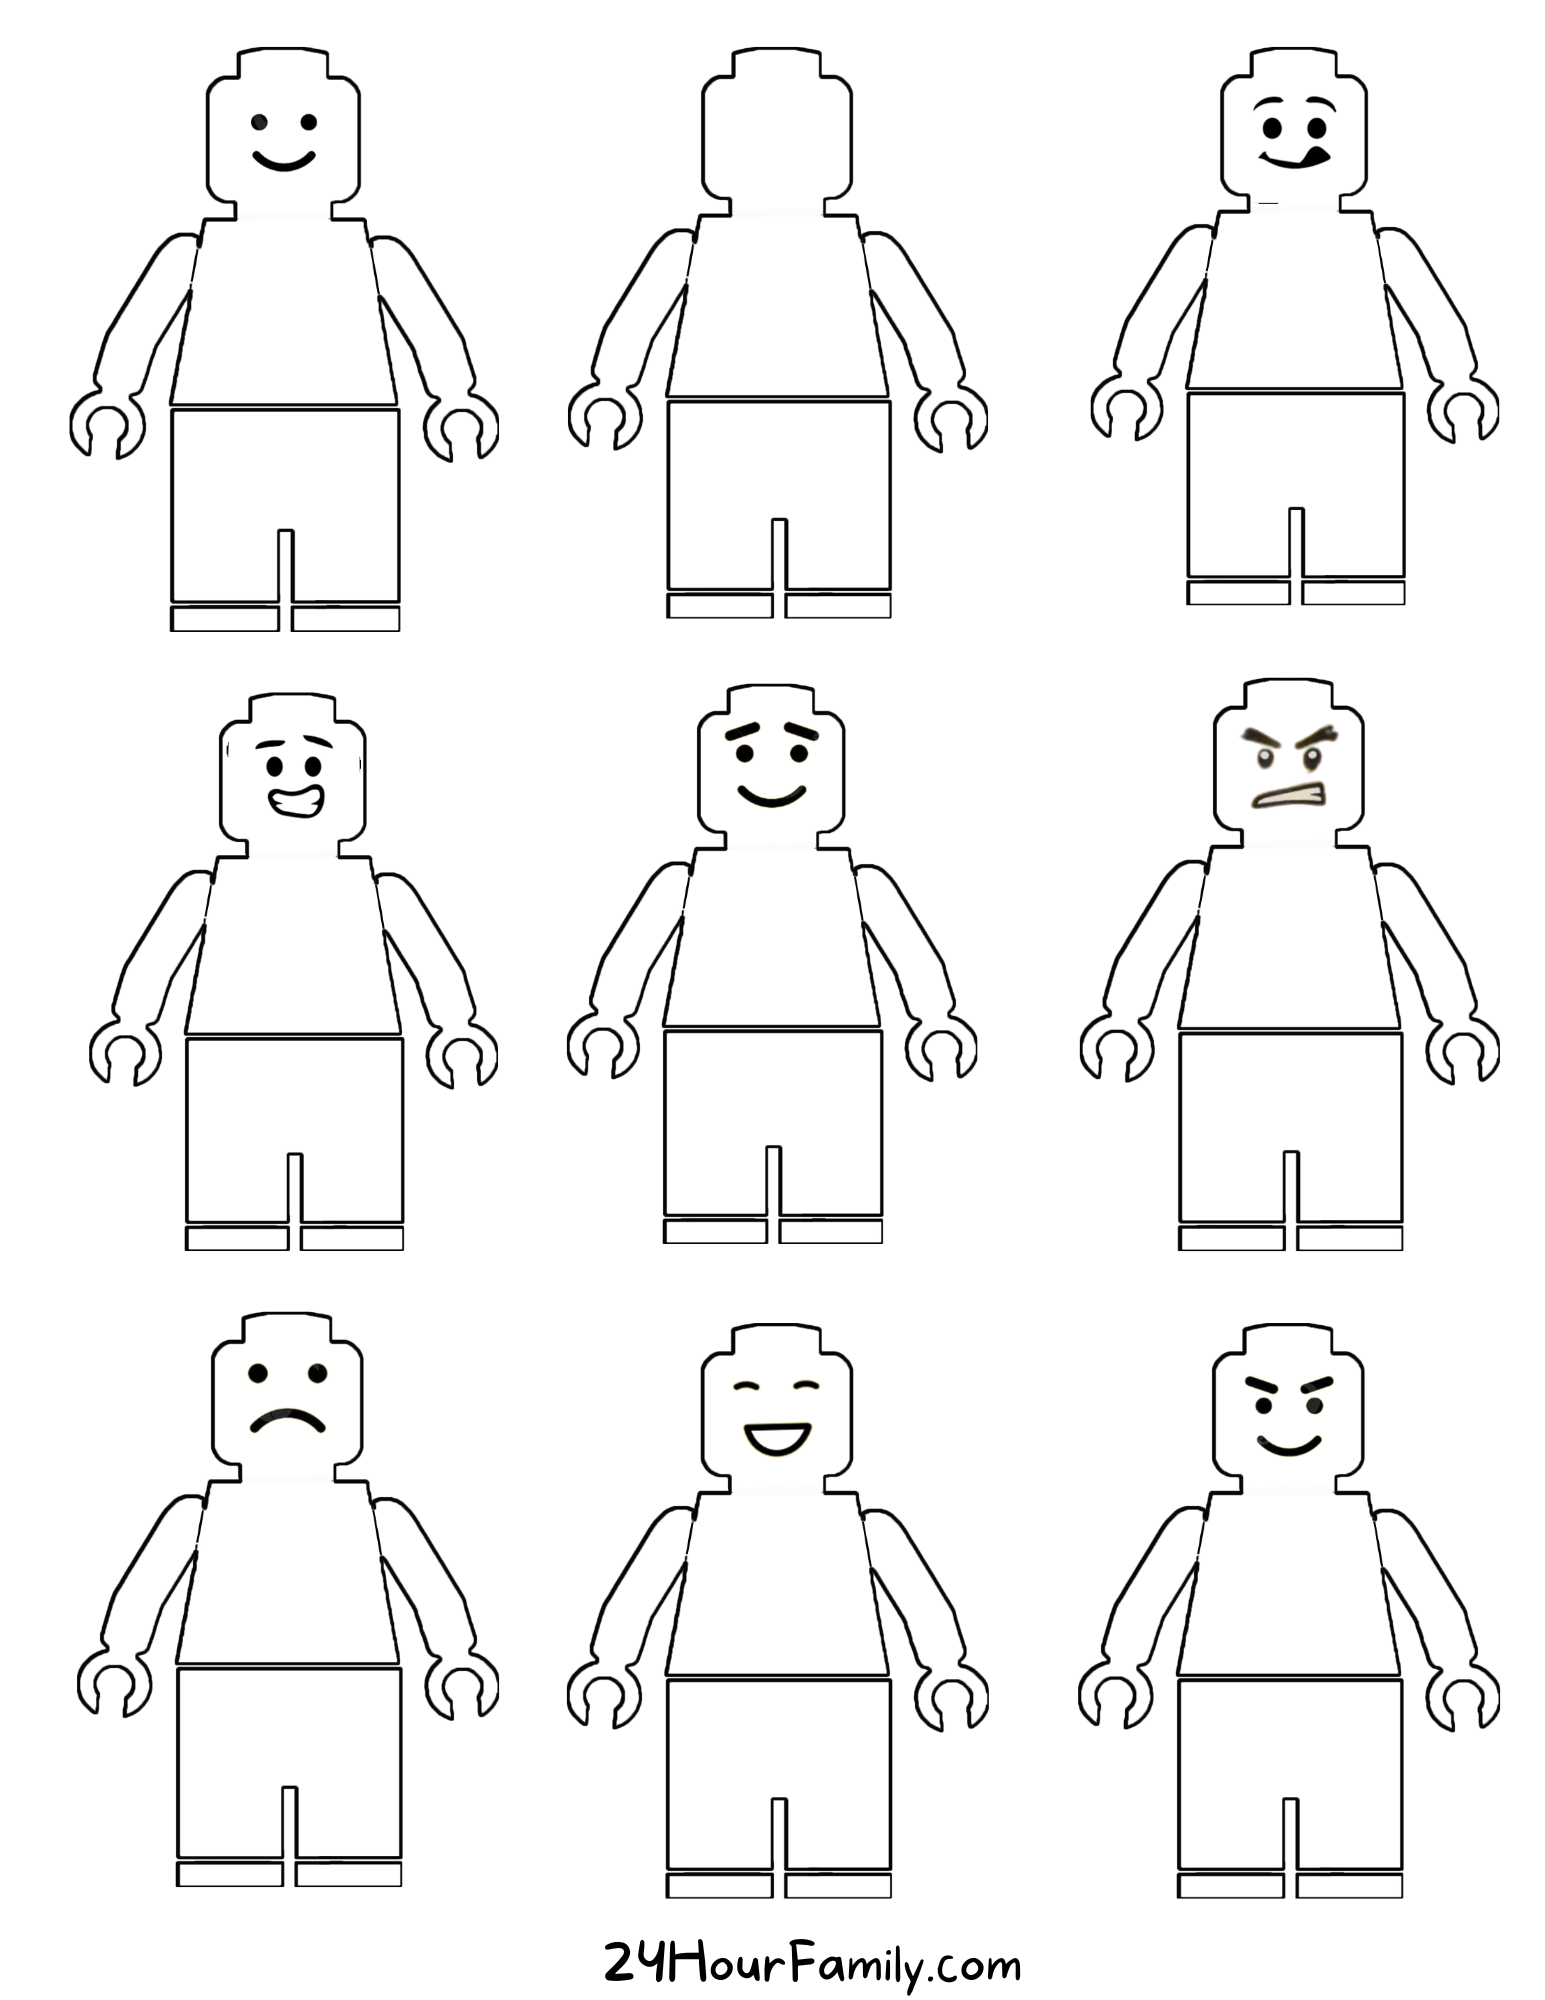 Lego Man Printable (21 Free Templates)